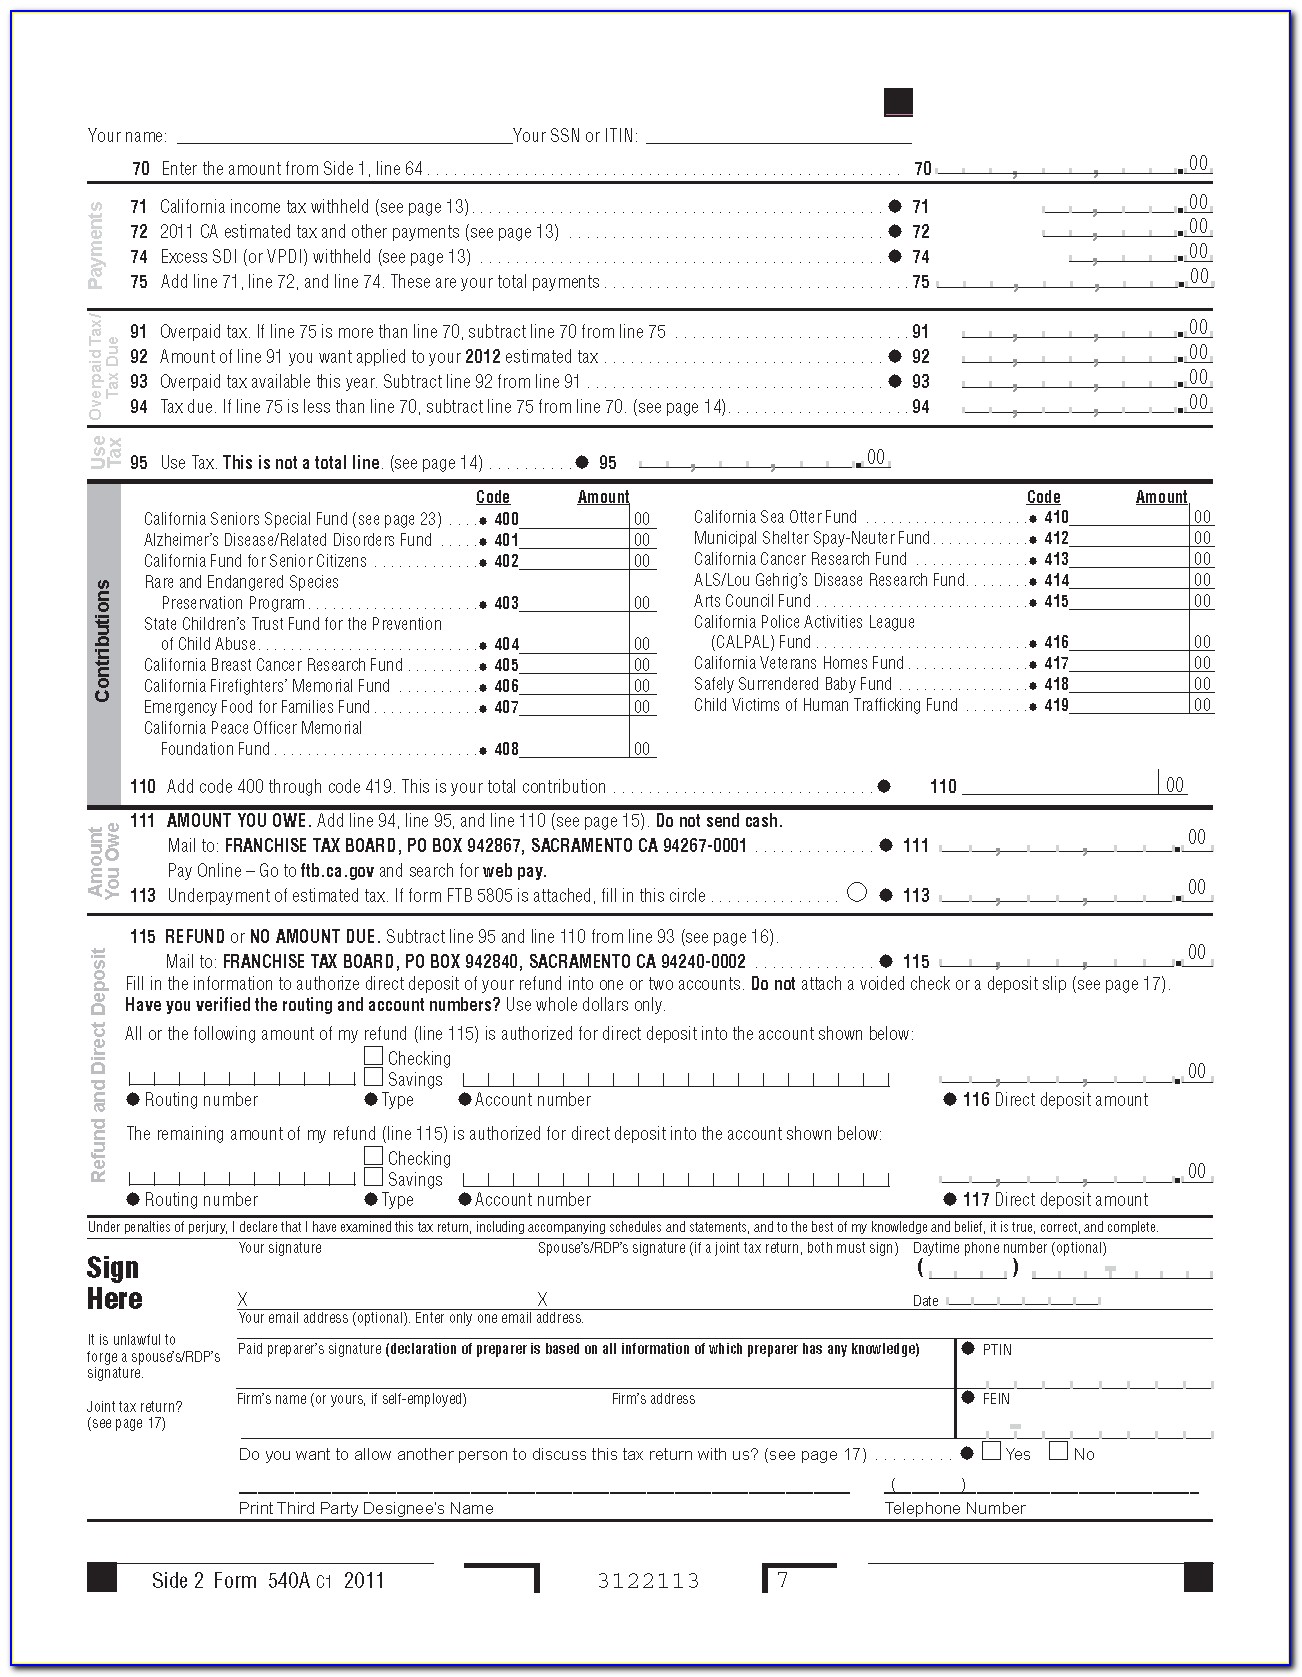 2014 Tax Return Form 1040ez